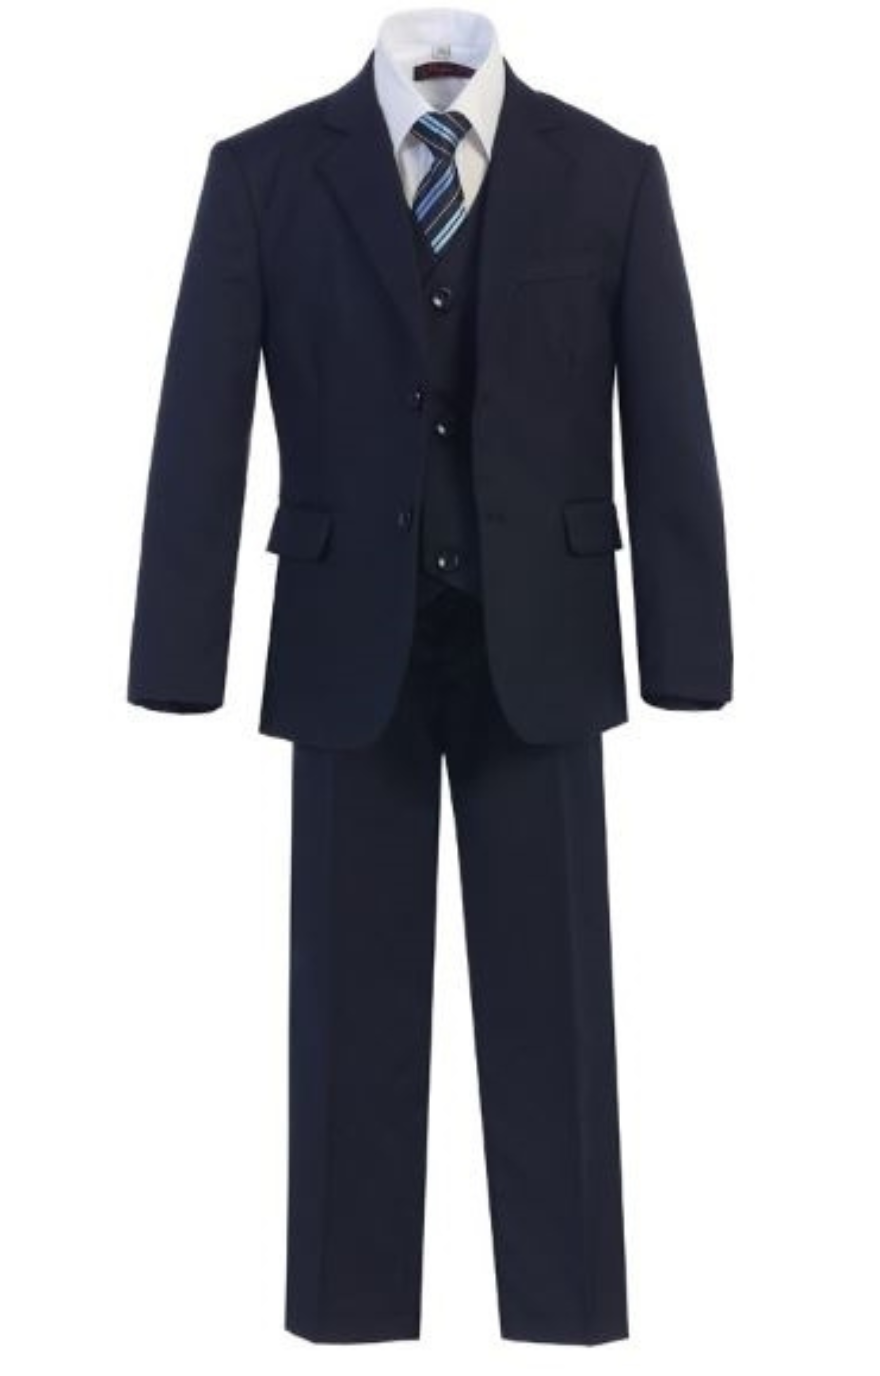 Harry 5pc Boys Suit: NAVY (Slim Fit)